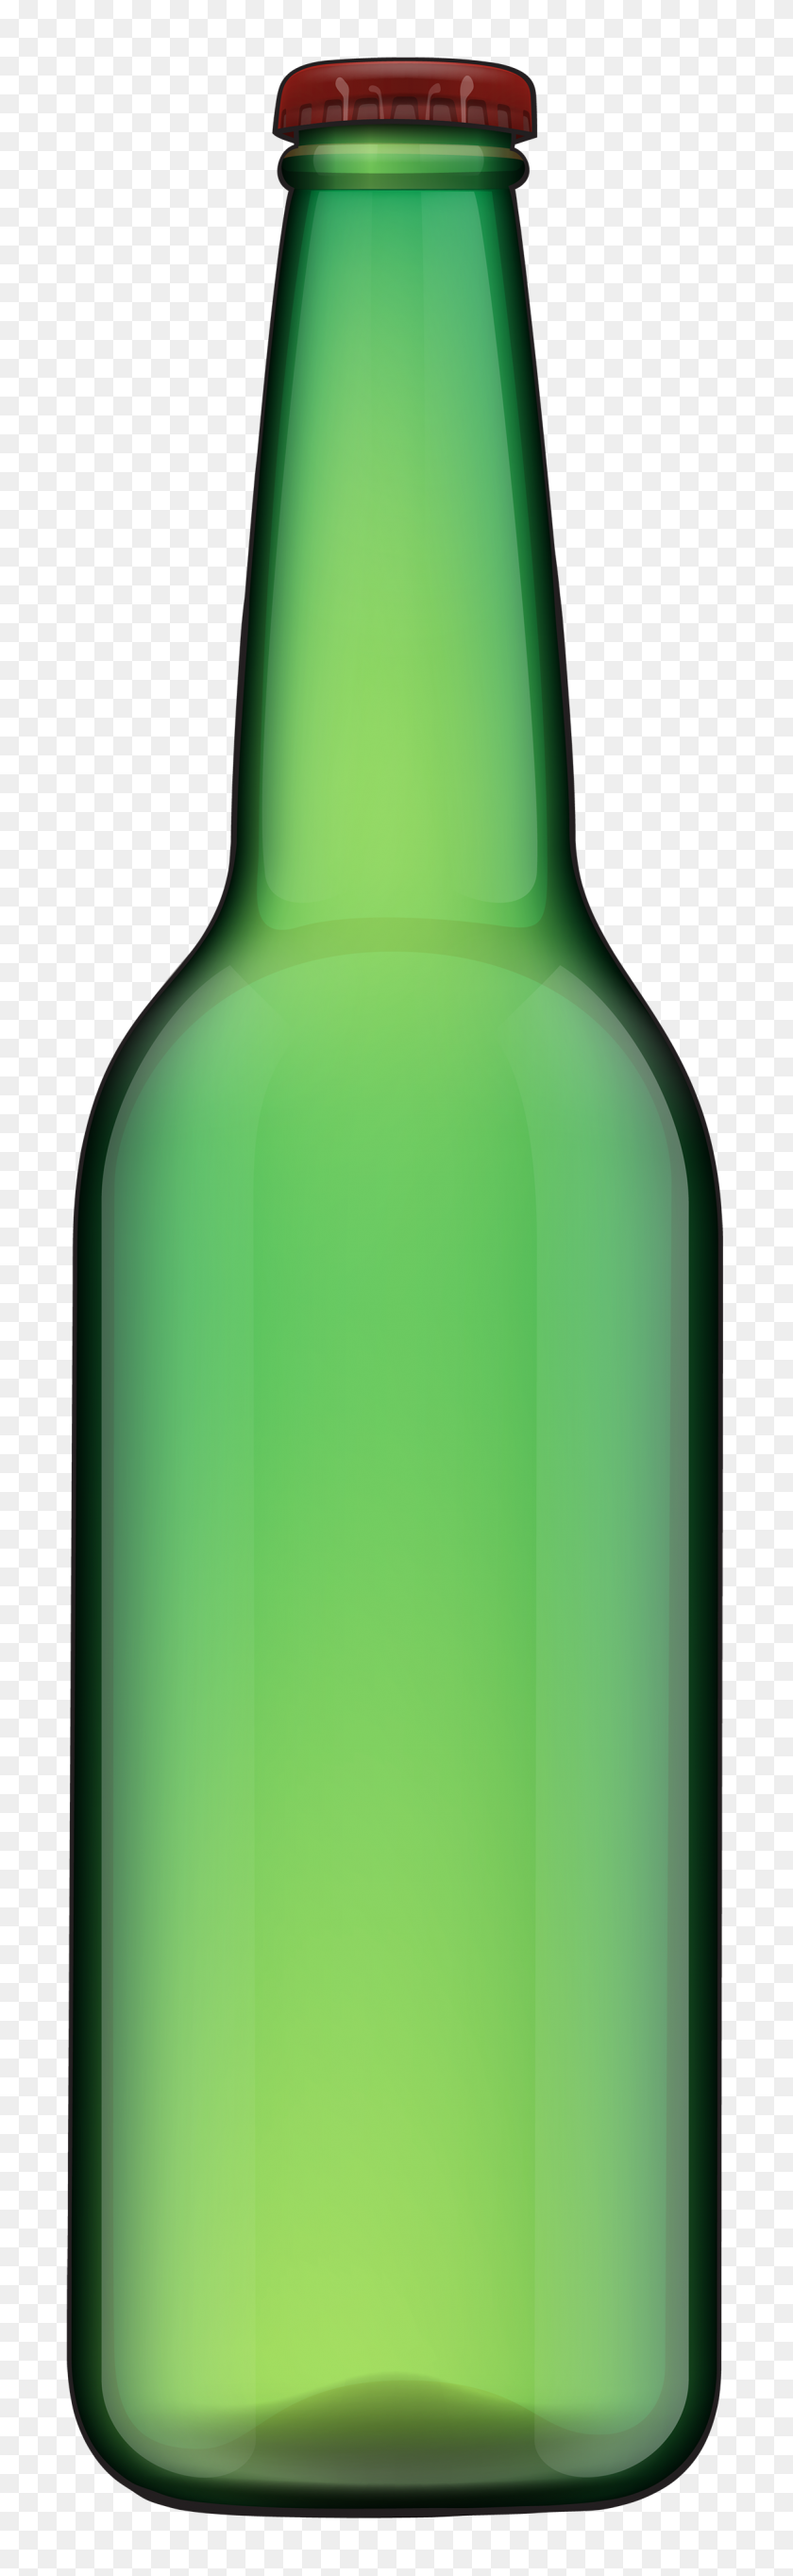 1169x4000 Beer Bottle Clip Art - Beer Clipart Free